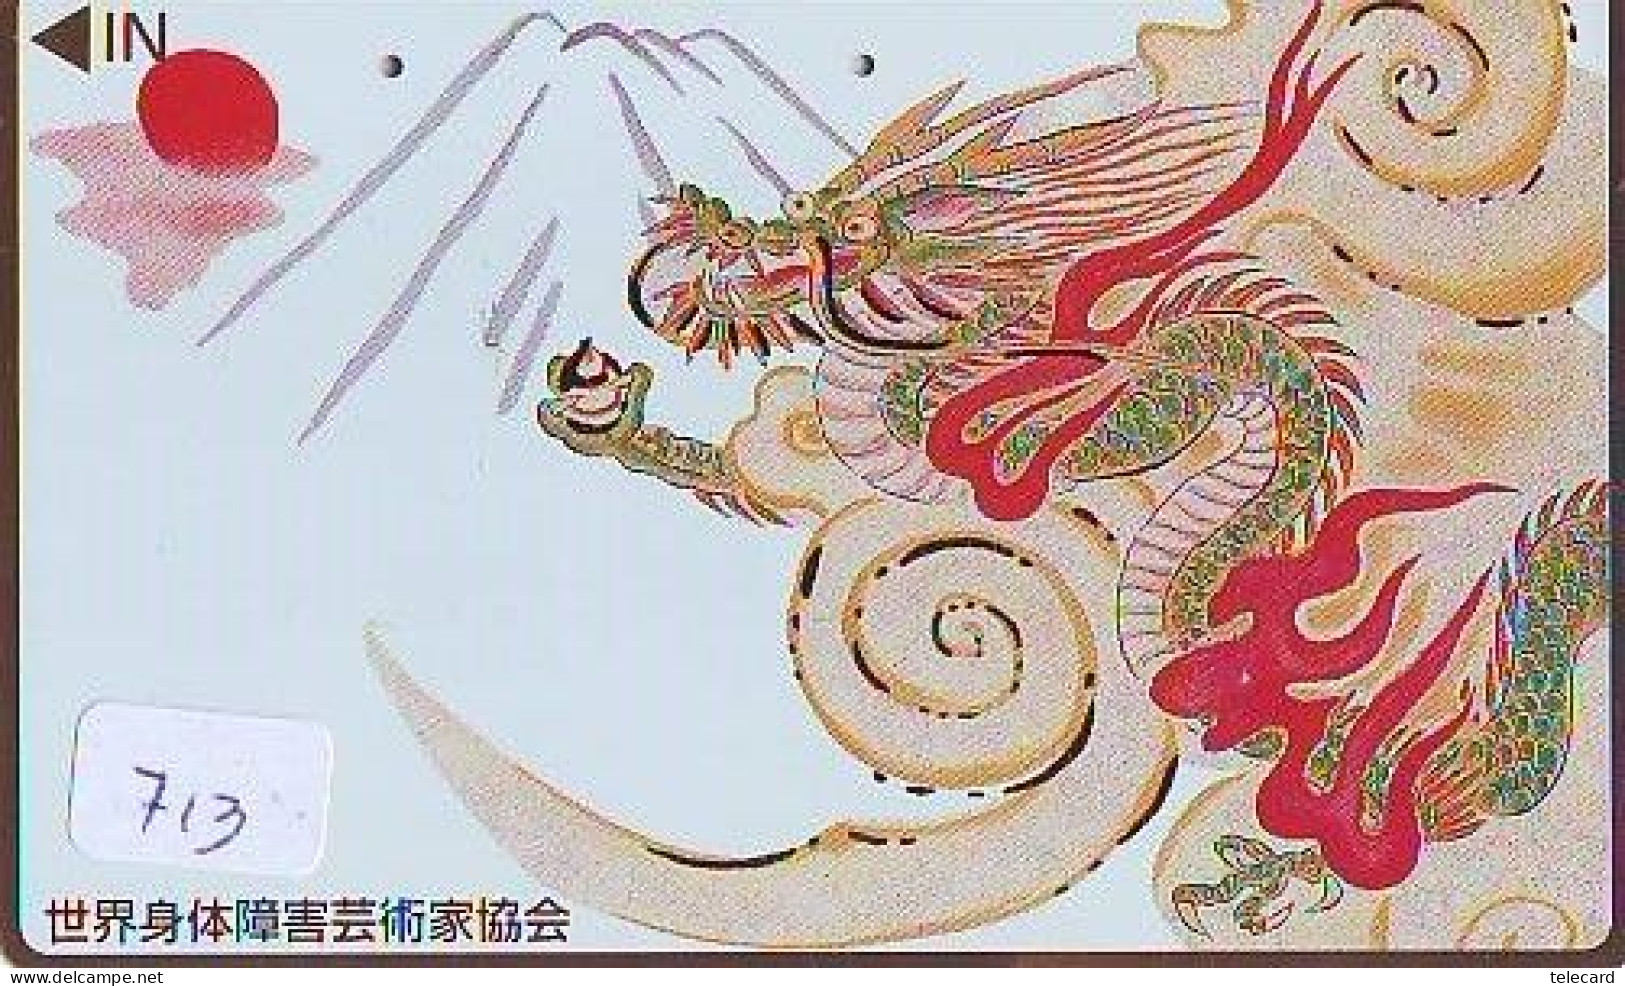 Télécarte Japon * DRAGON L'ESTRAGON DRACHE DRAGÓN DRAGO (713) Zodiaque - Zodiac Horoscope * Phonecard Japan - Zodiaque